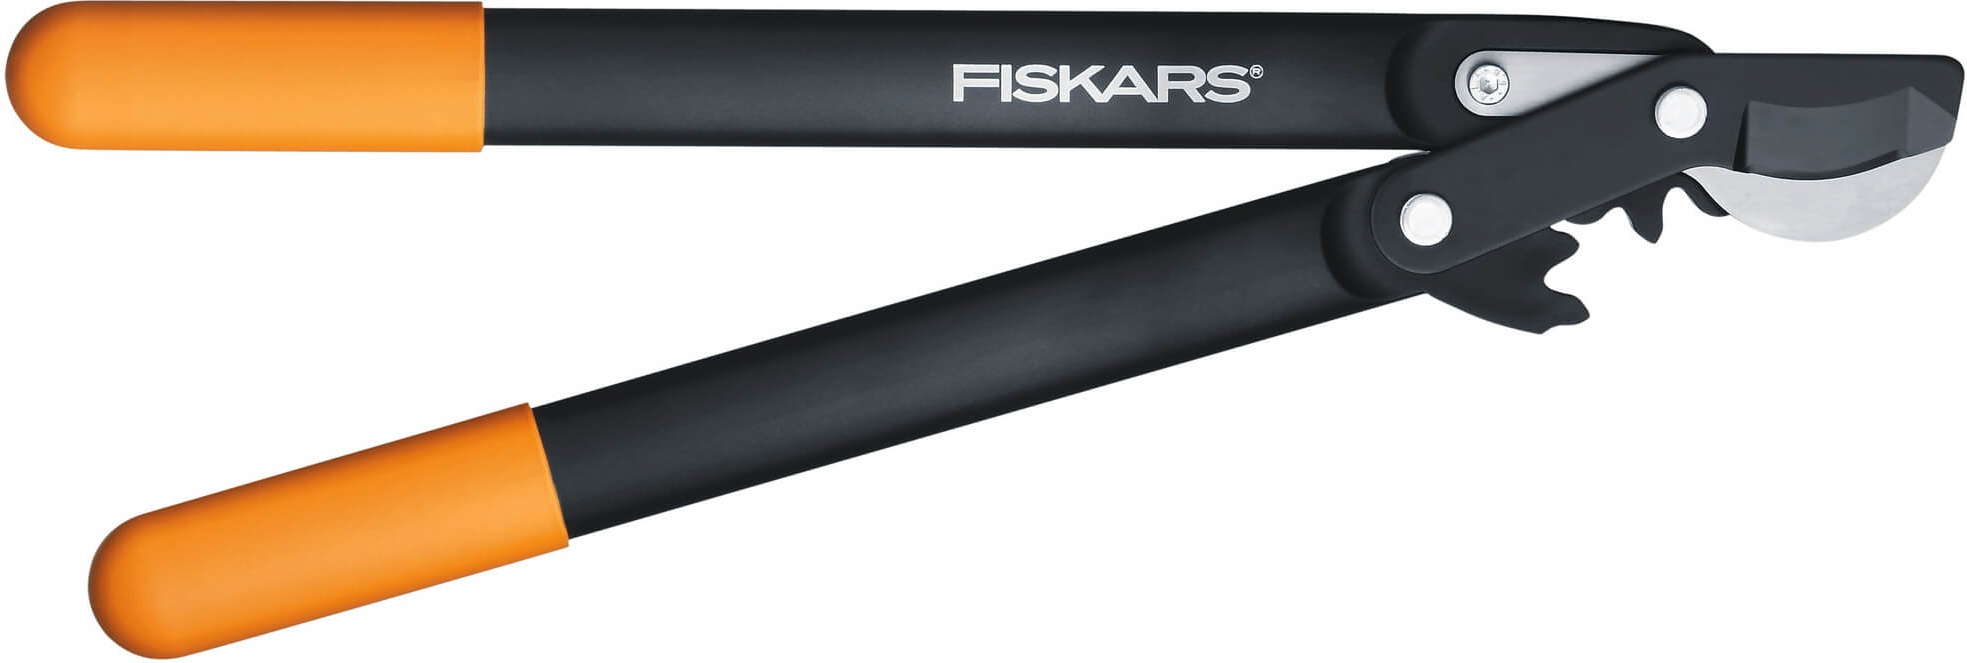 Малый плоскостной сучкорез с загнутыми лезвиями  (Fiskars), (S) L70